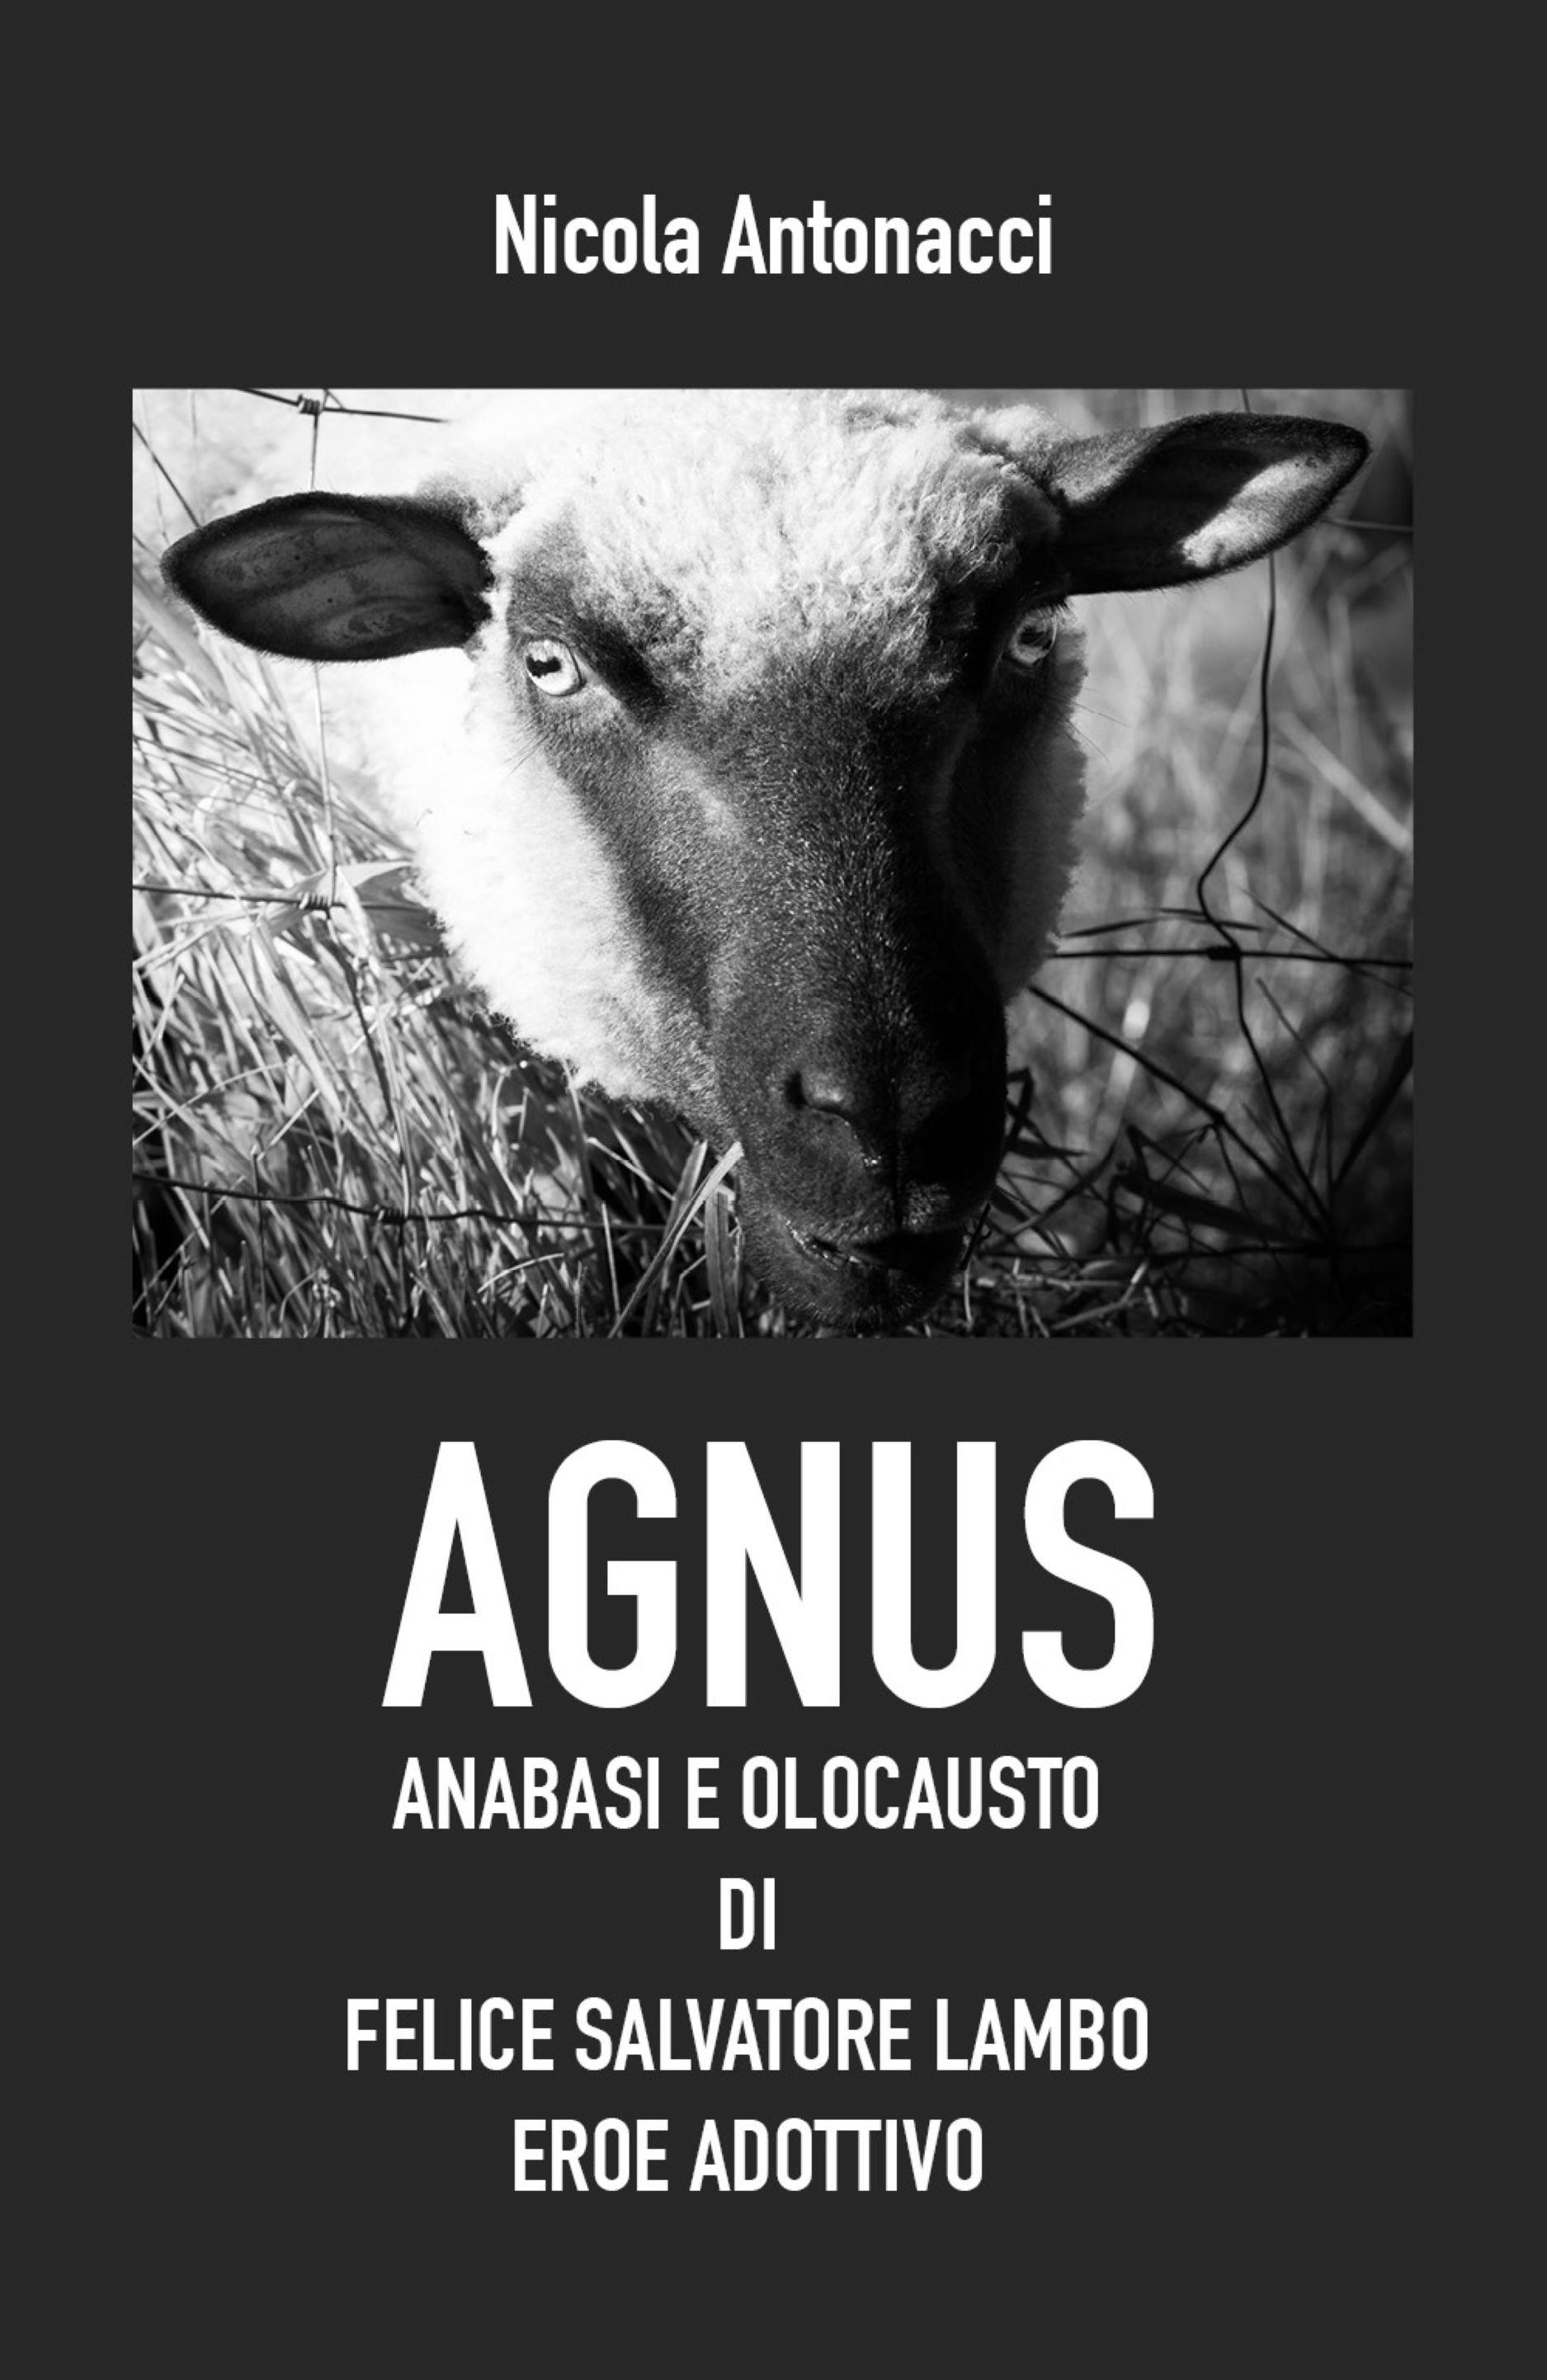 Agnus. Anabasi e olocausto di Felice Salvatore Lambo, eroe adottivo